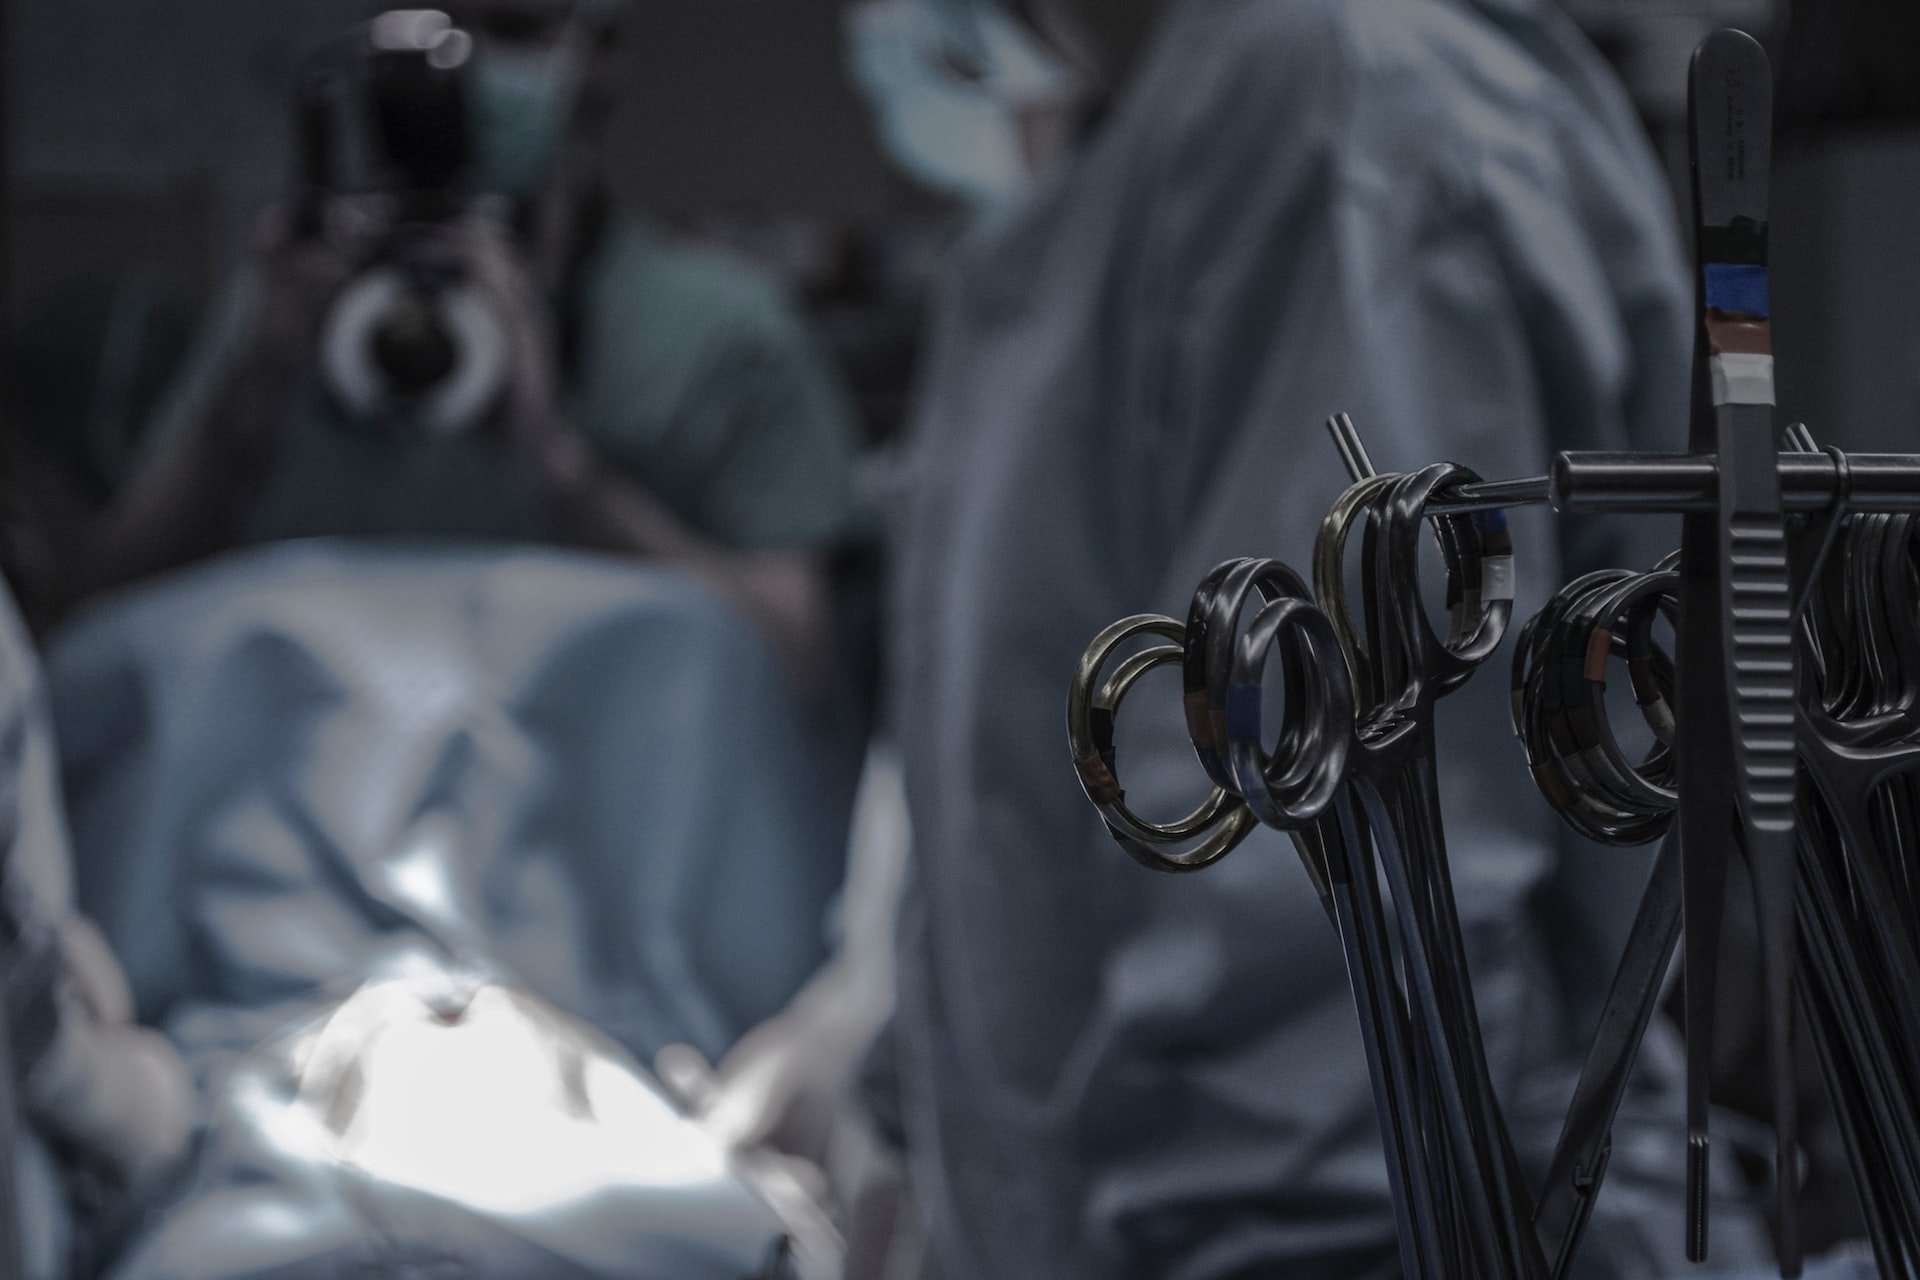 Ижевские хирурги удалили 17-летней девушке опухоль яичника весом более 5 кг